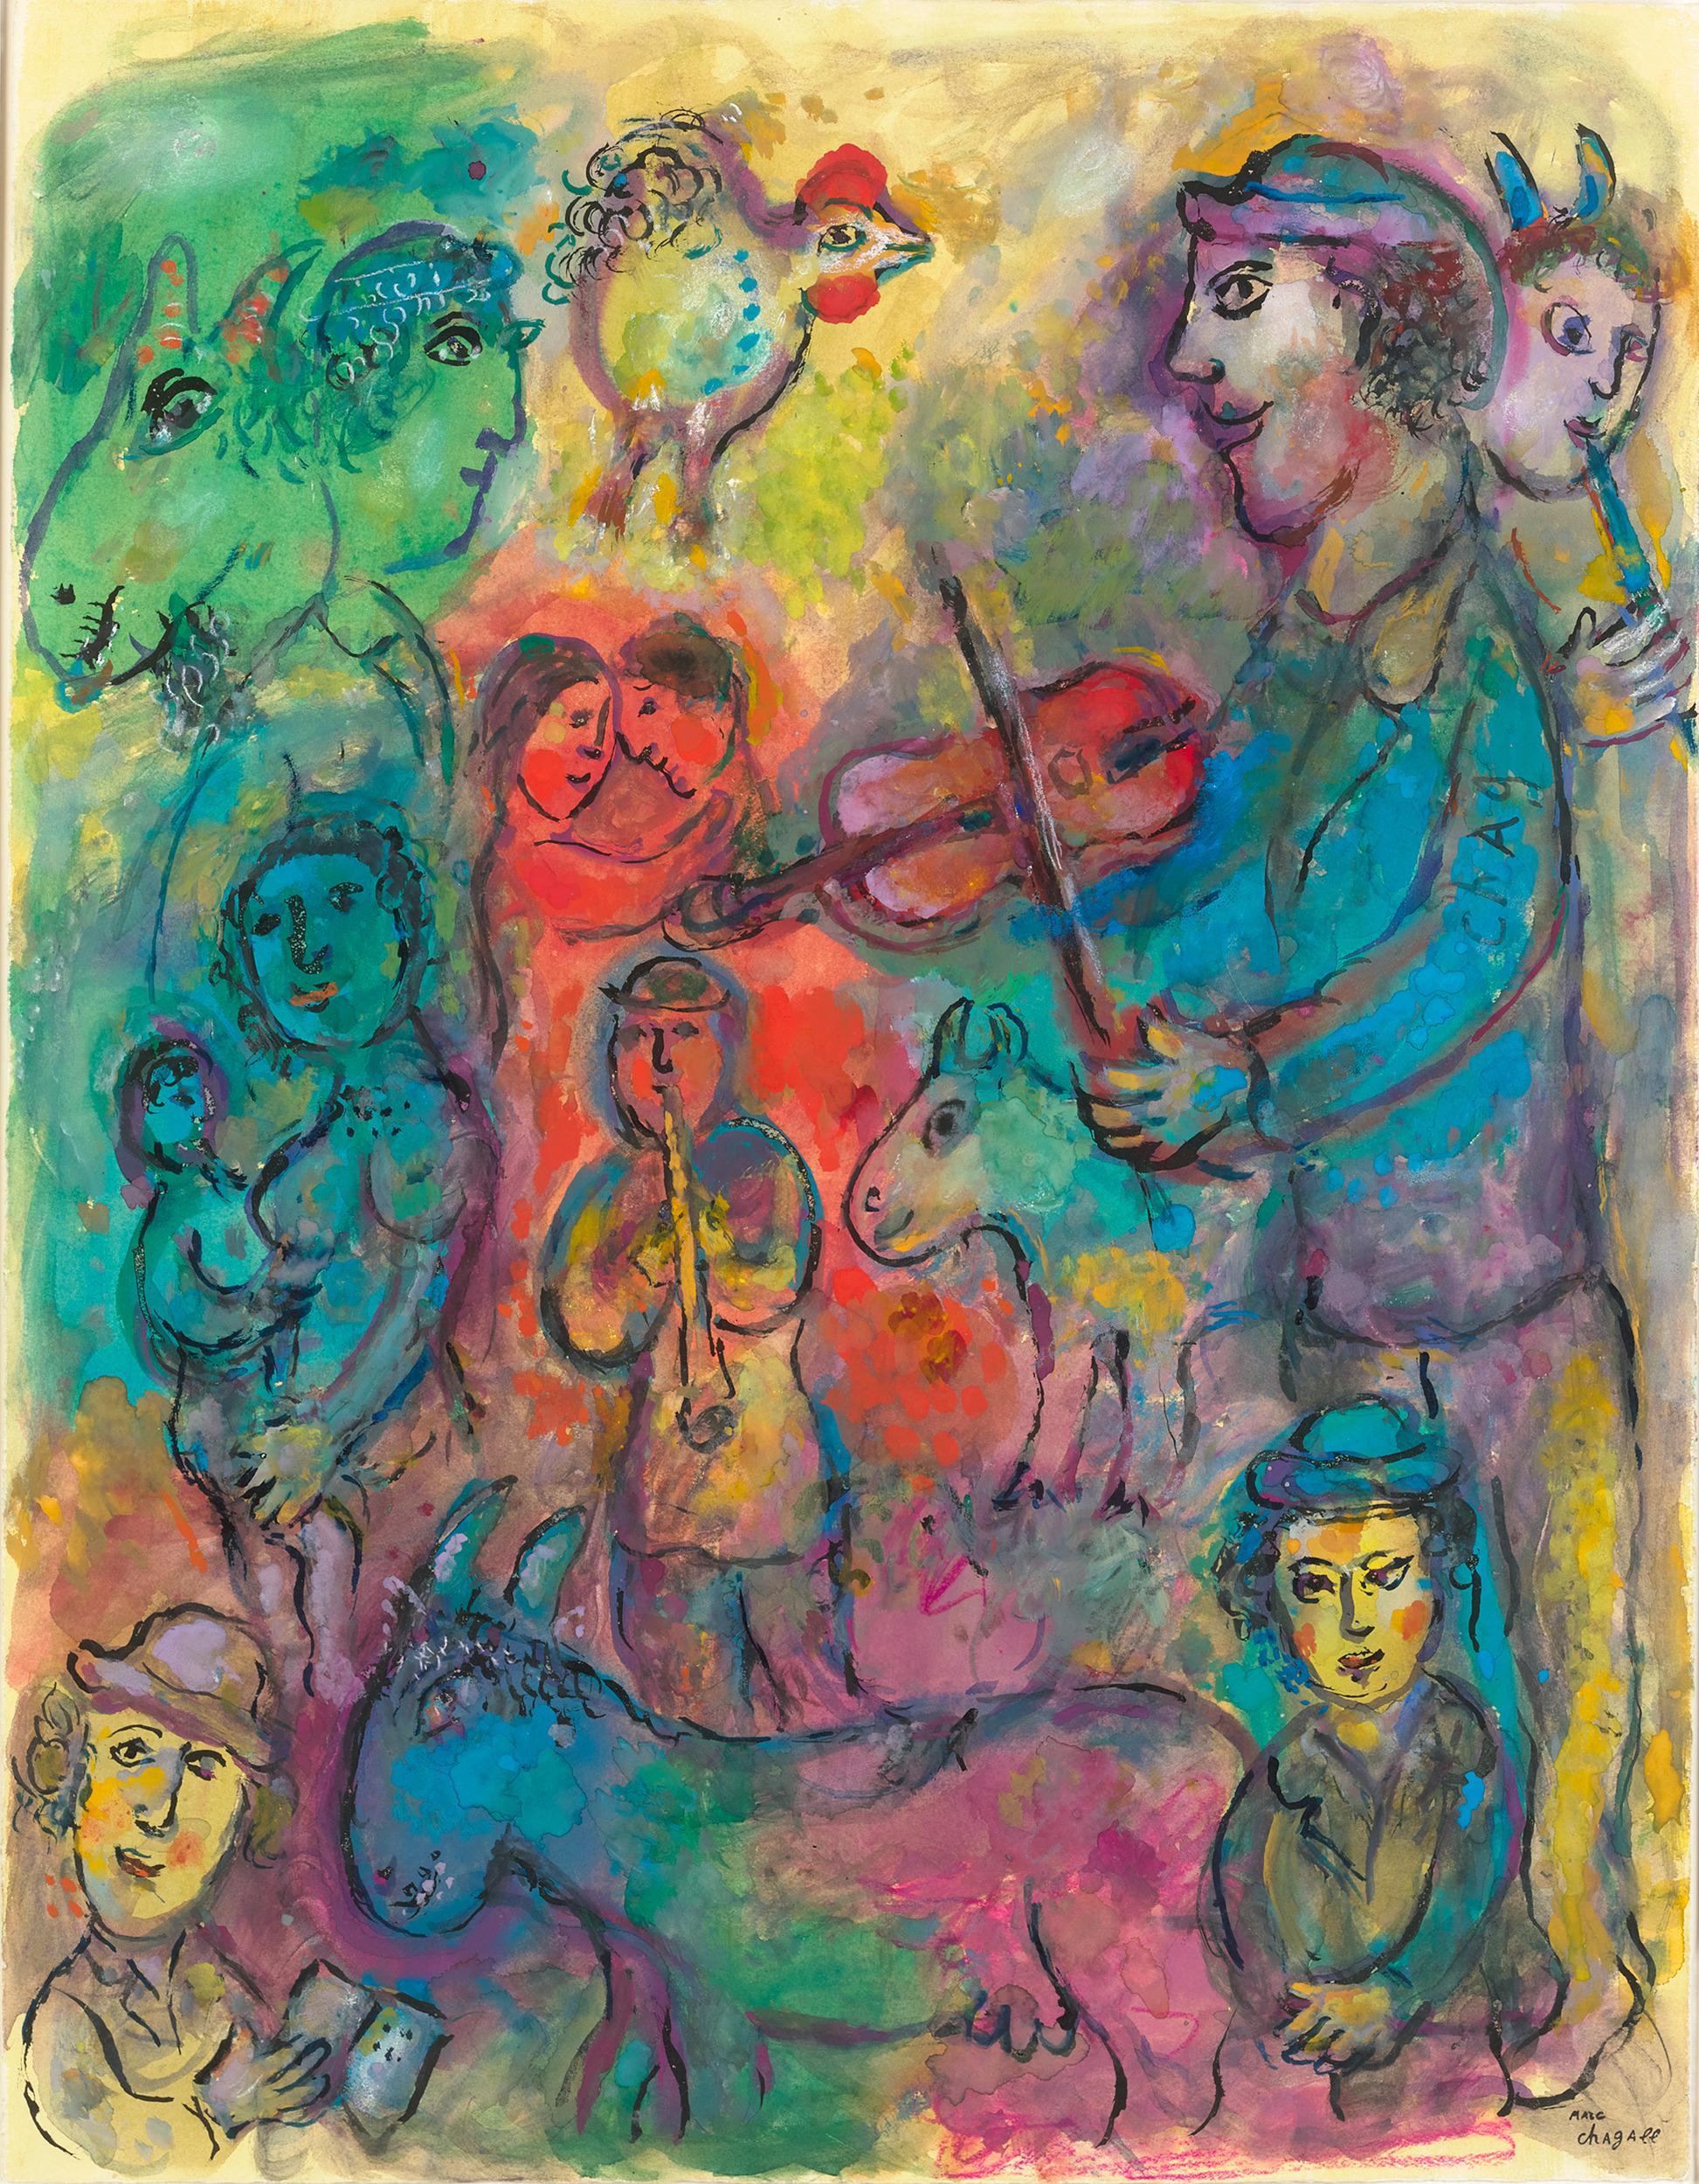 Marc Chagall
1887-1985  Russie

Musiciens sur fond multicolore
(Musiciens sur fond multicolore)

Signé "Chag" (sur la manche du personnage de droite) ; estampillé de la signature "Marc Chagall" (en bas à droite)
Tempera, gouache, encre de couleur,